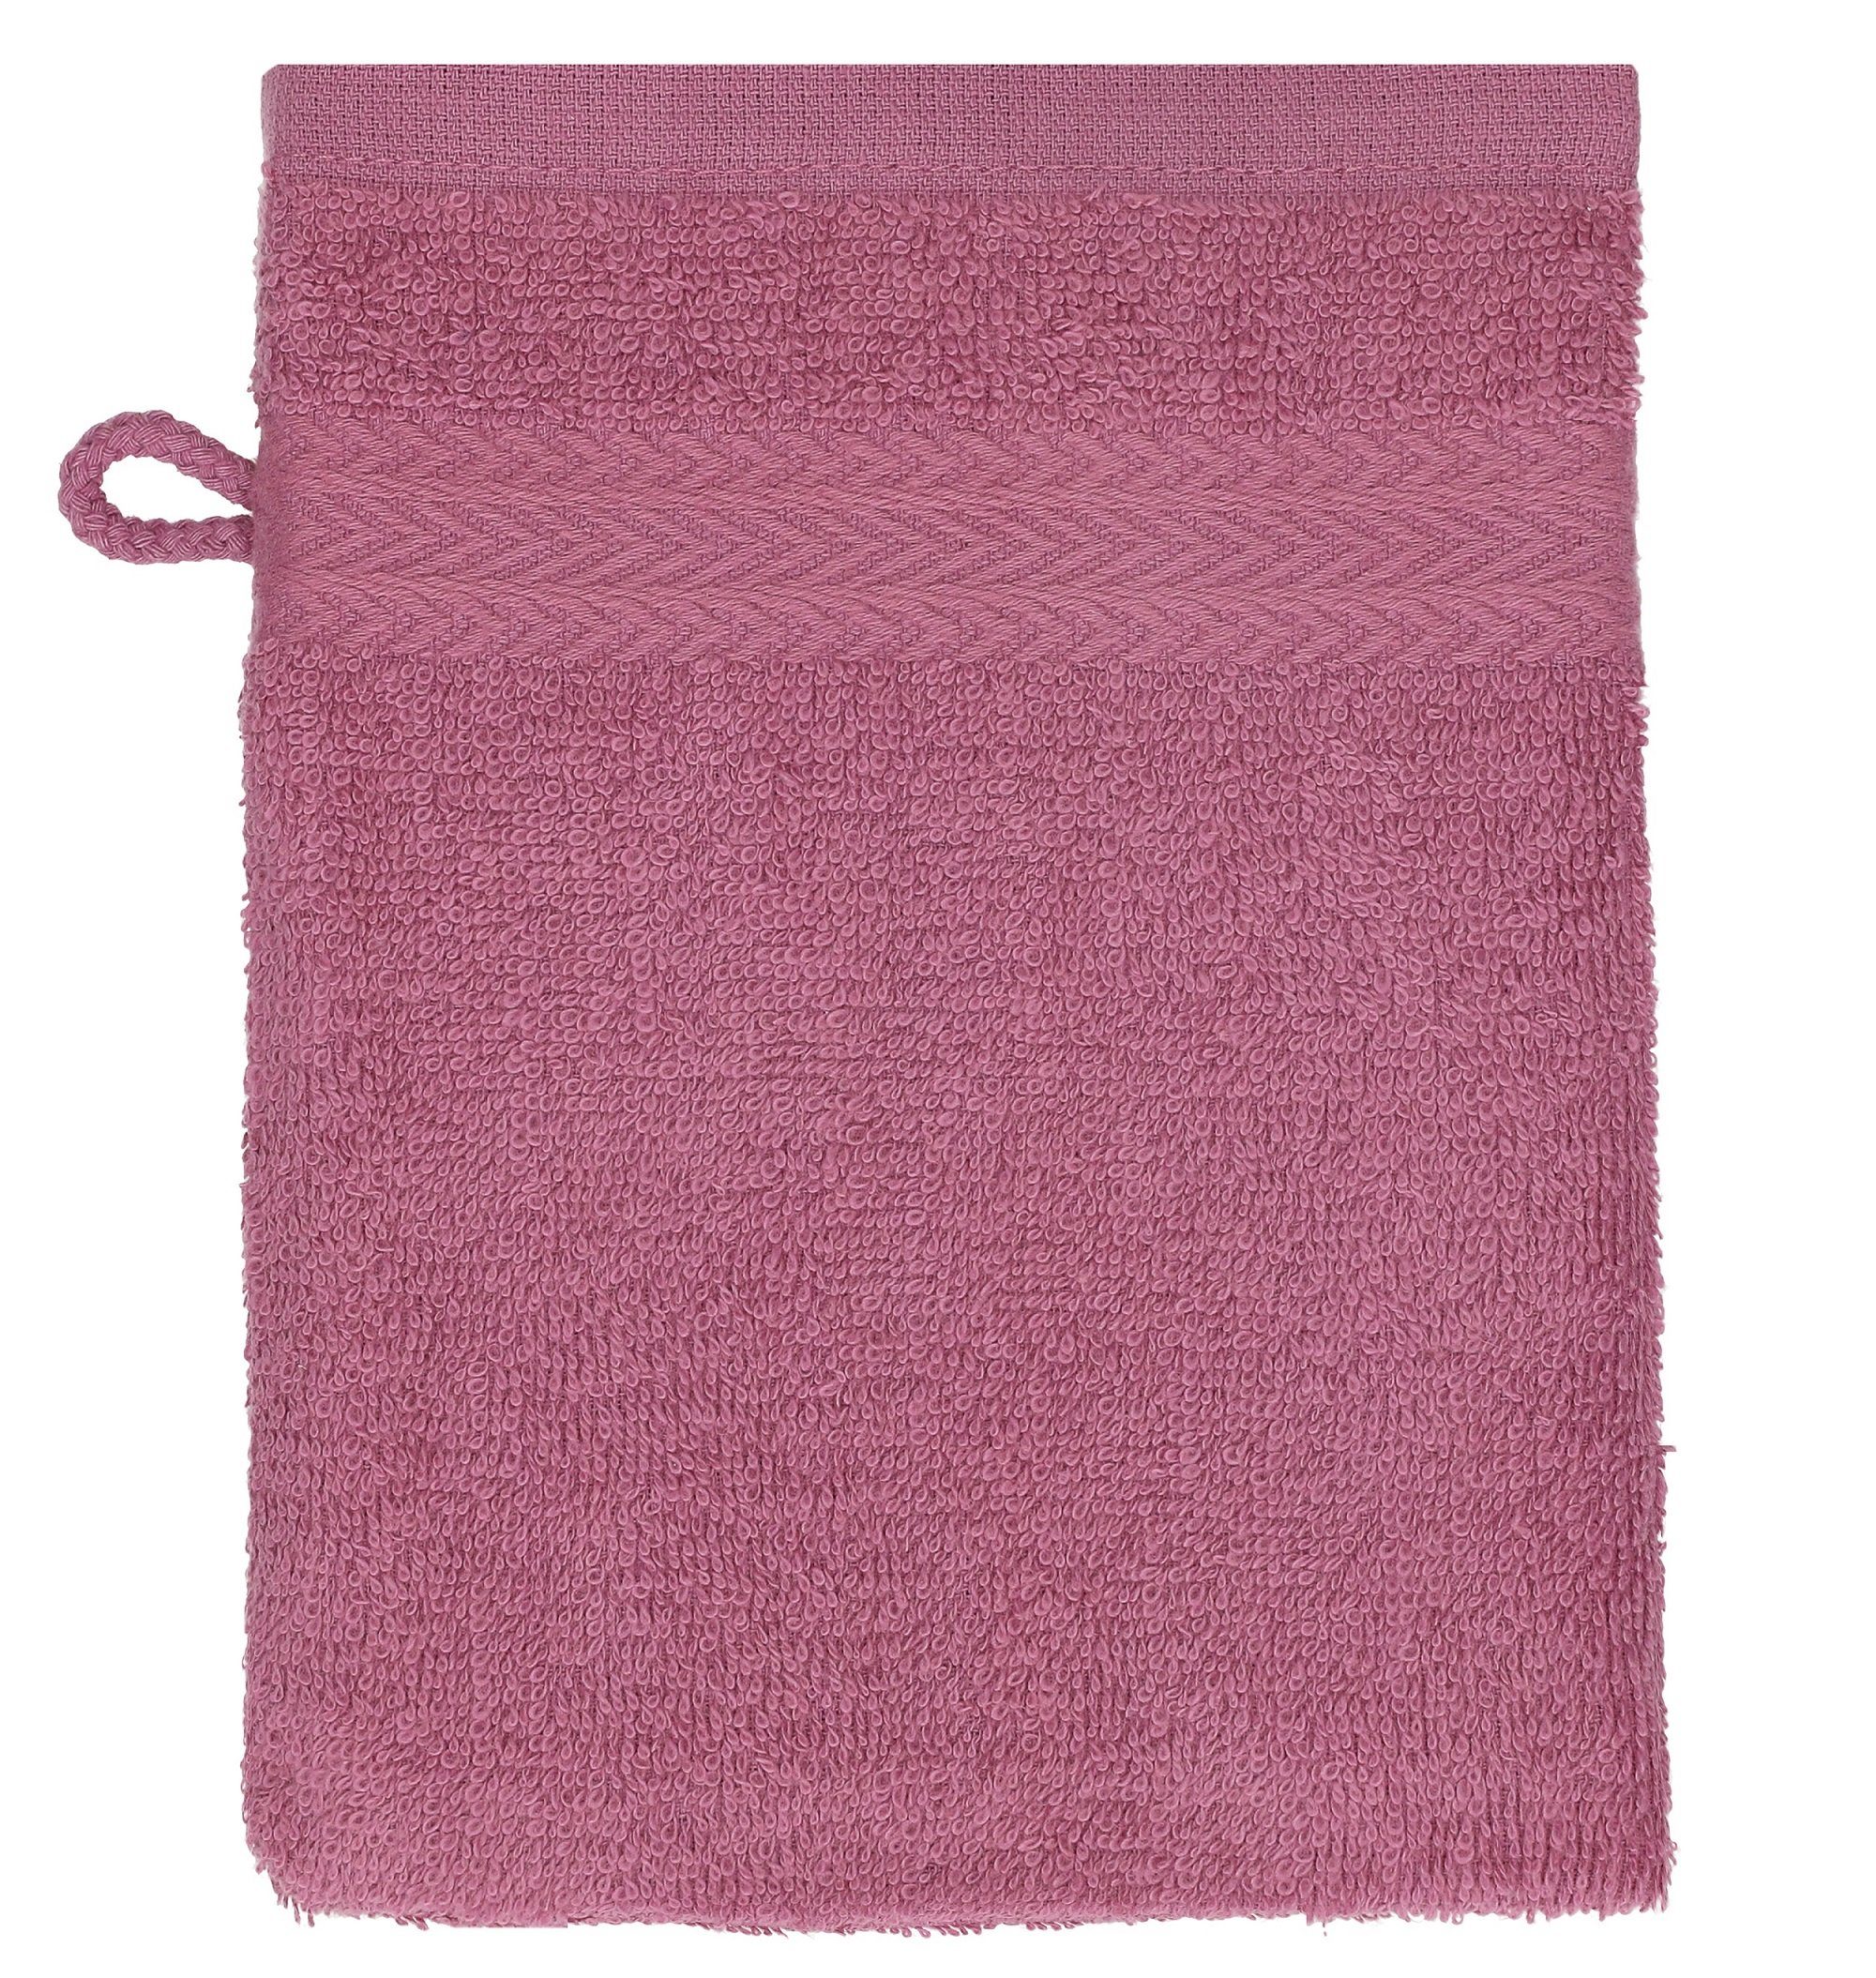 Waschhandschuhe rubinrot Baumwolle Set Beere 100% Stück Waschlappen Betz cm 16x21 Farbe Waschhandschuh - Premium 10